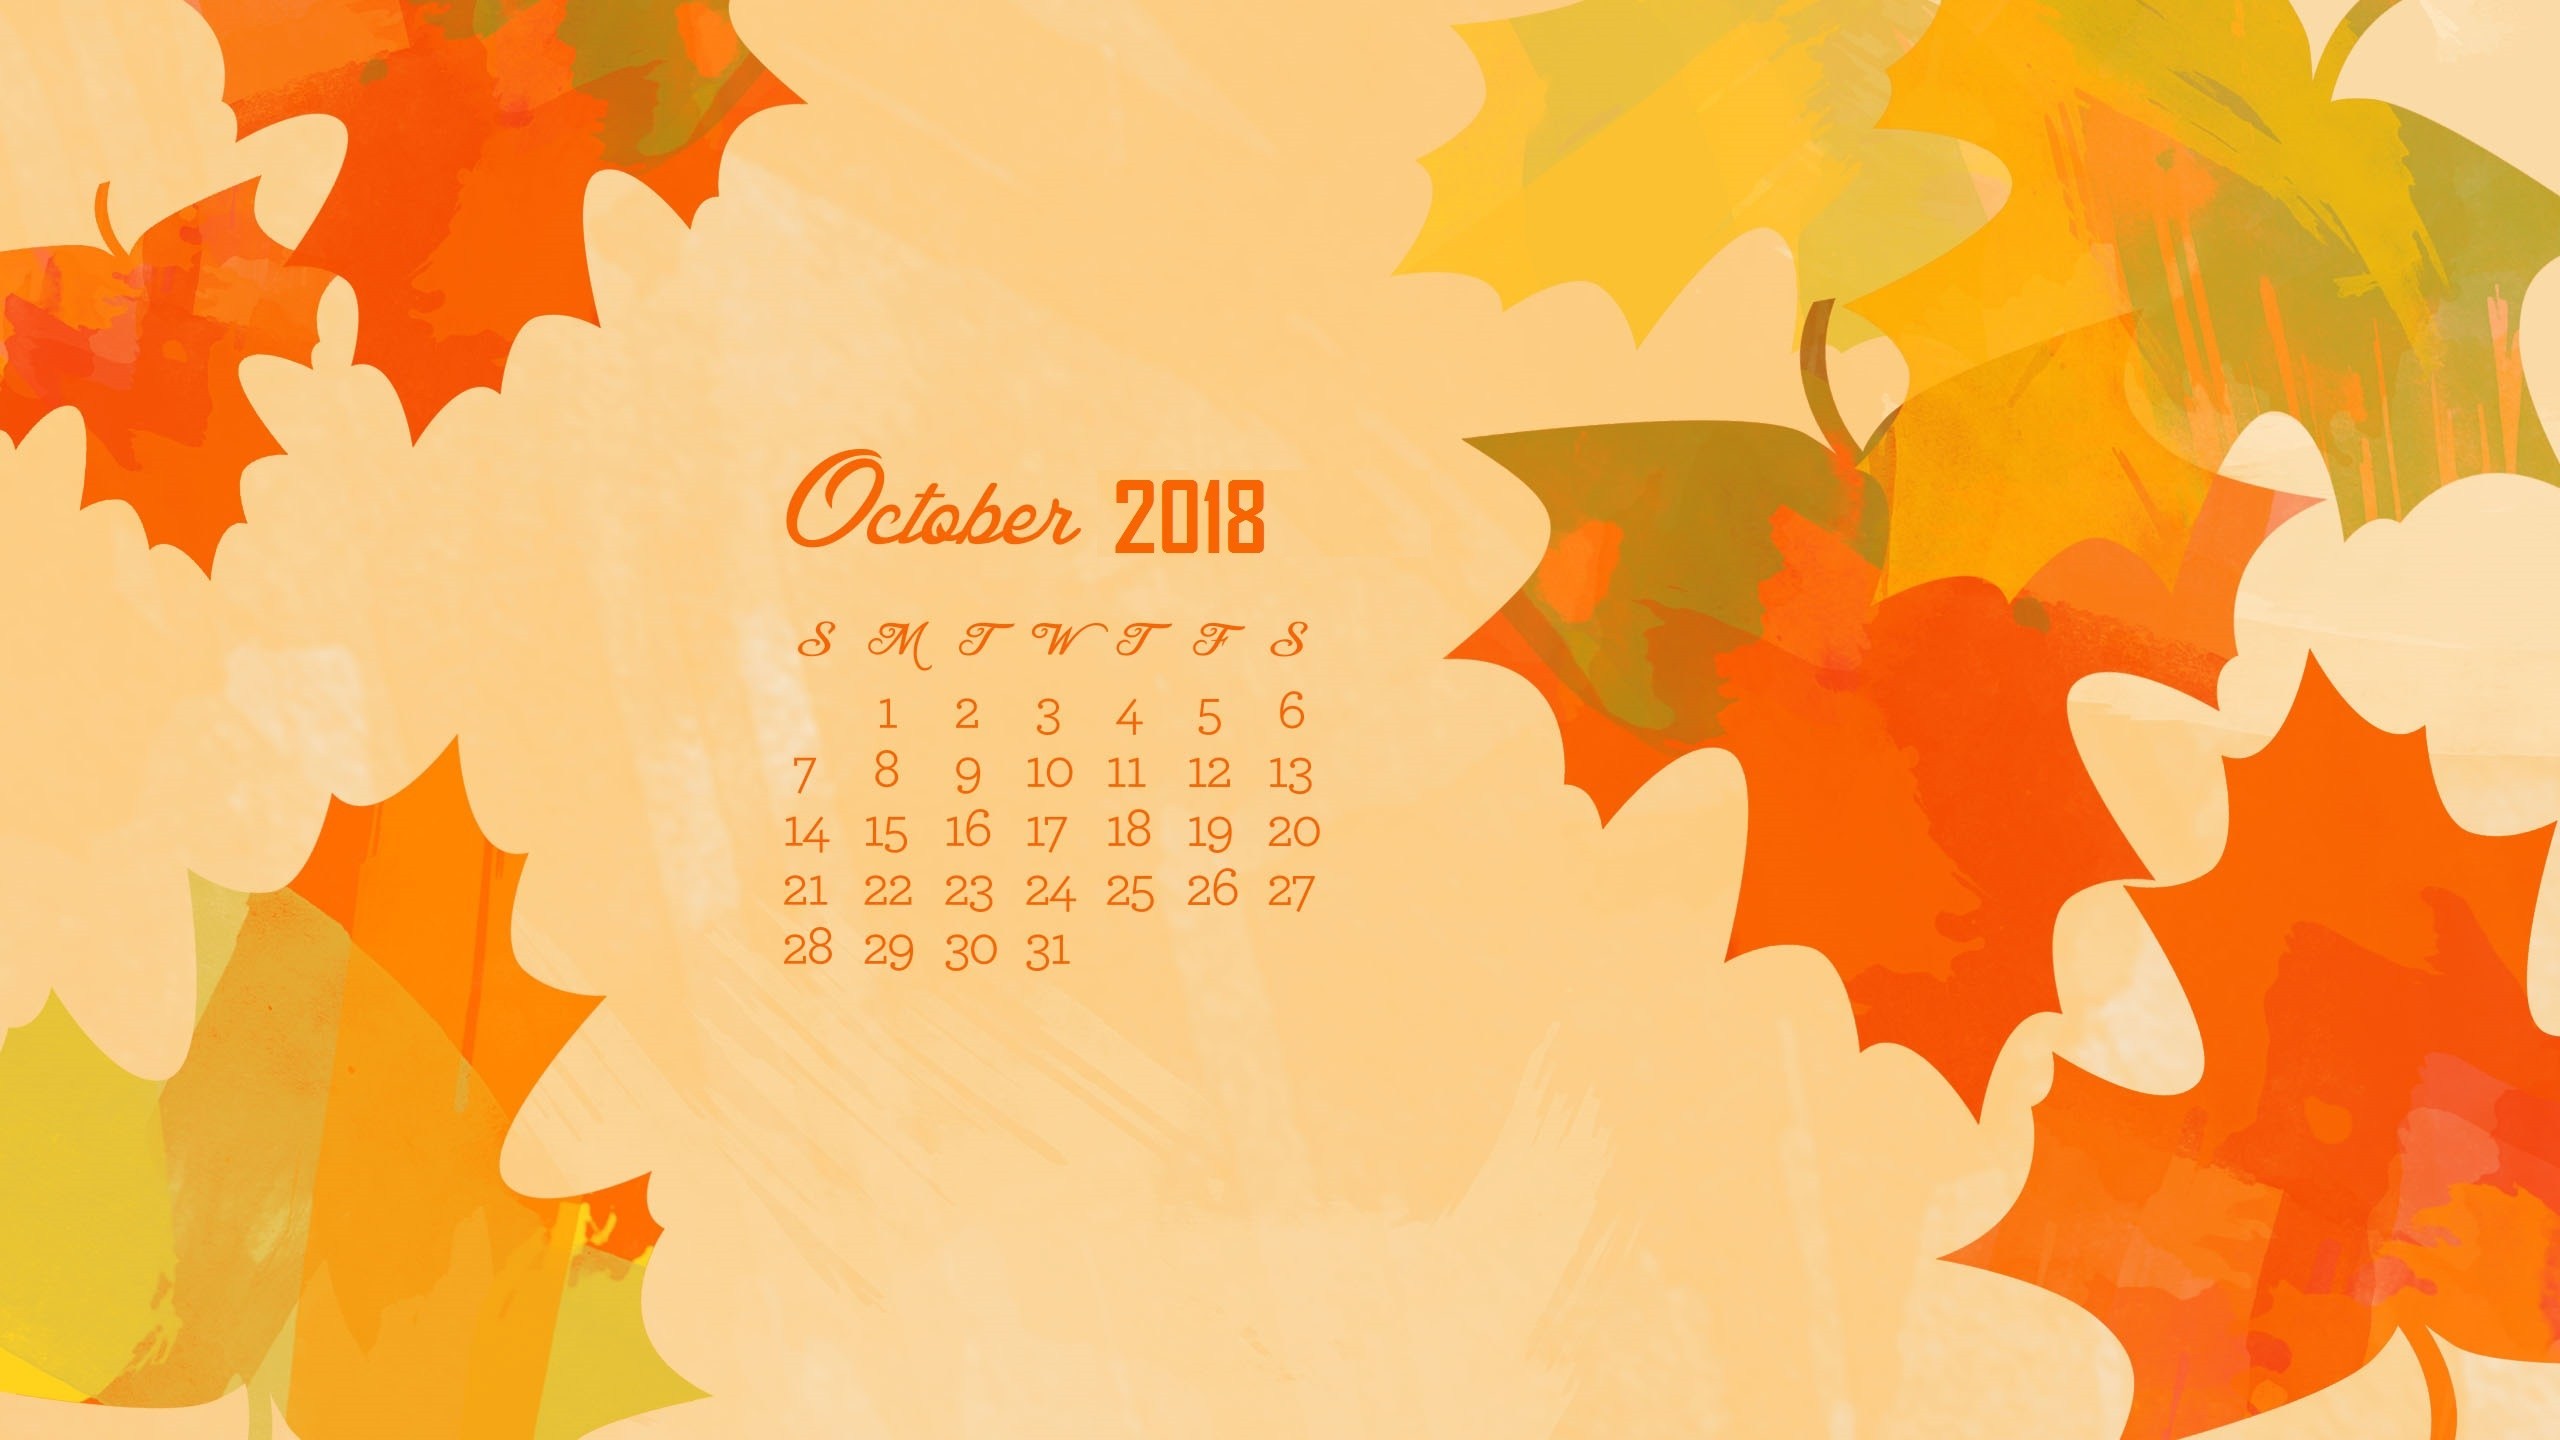 october-2018-calendar-wallpapers-calendar-wallpaper-wallpaper-calendar